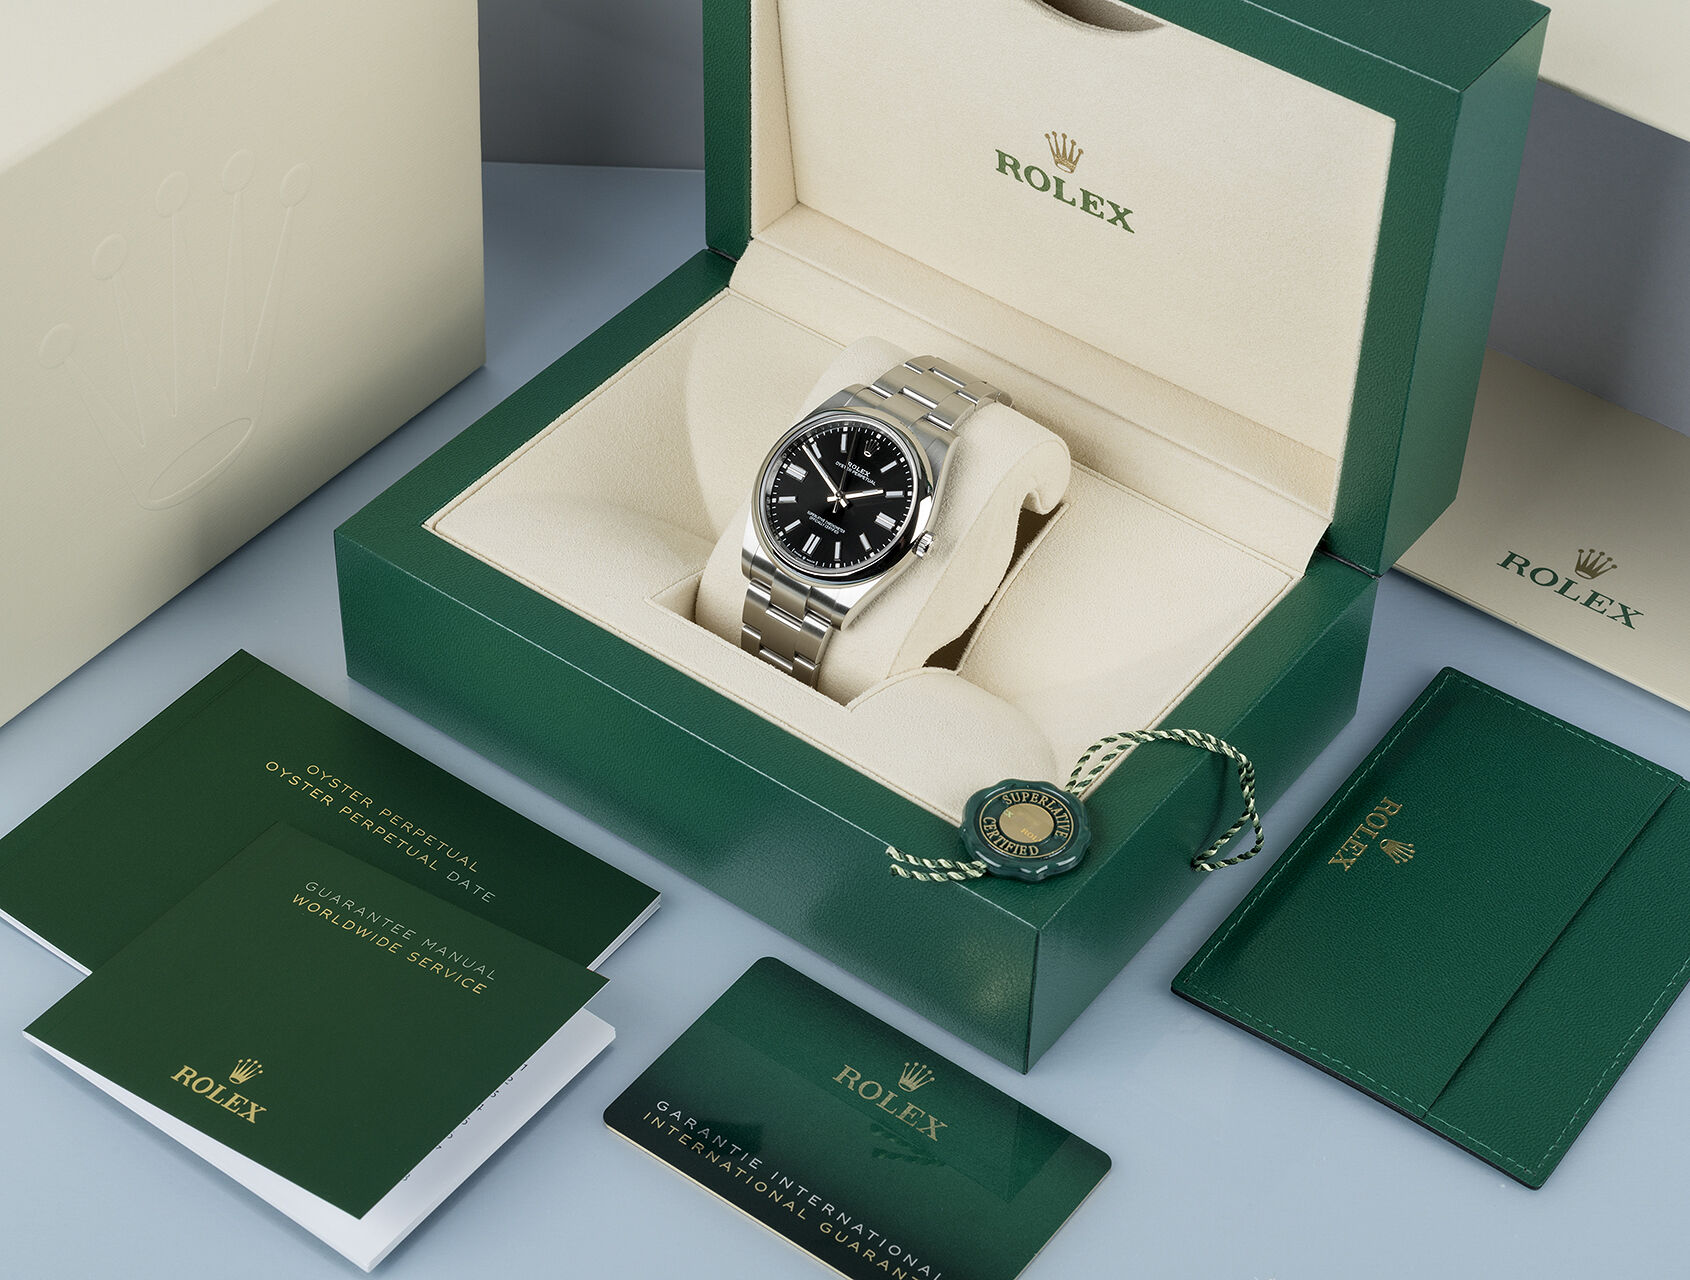 ref 124300 | Box & Certificate | Rolex Oyster Perpetual